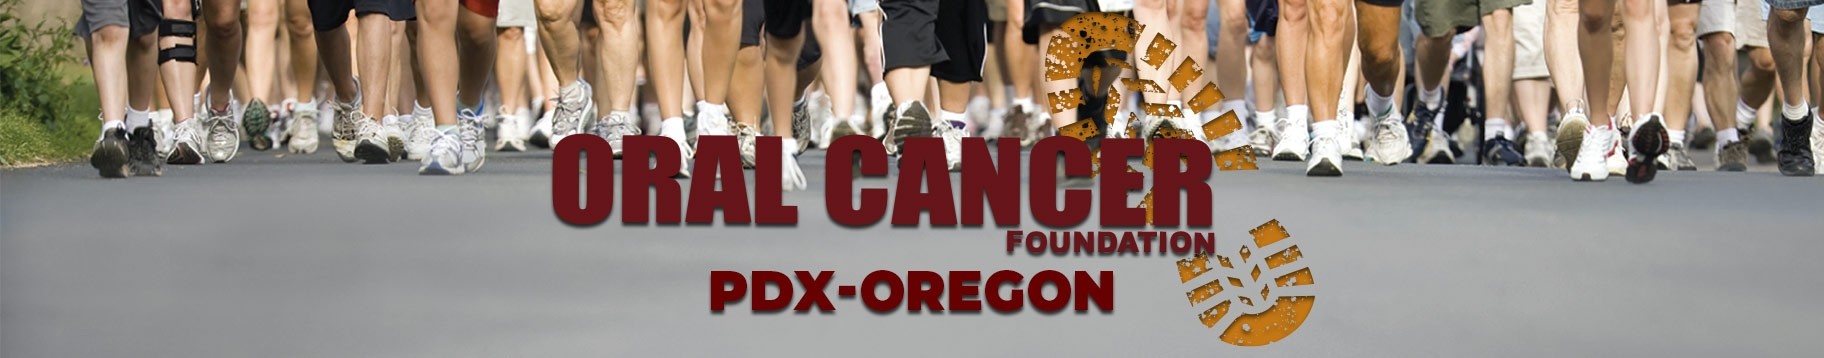 PDX Oregon Oral Cancer Foundation Walk